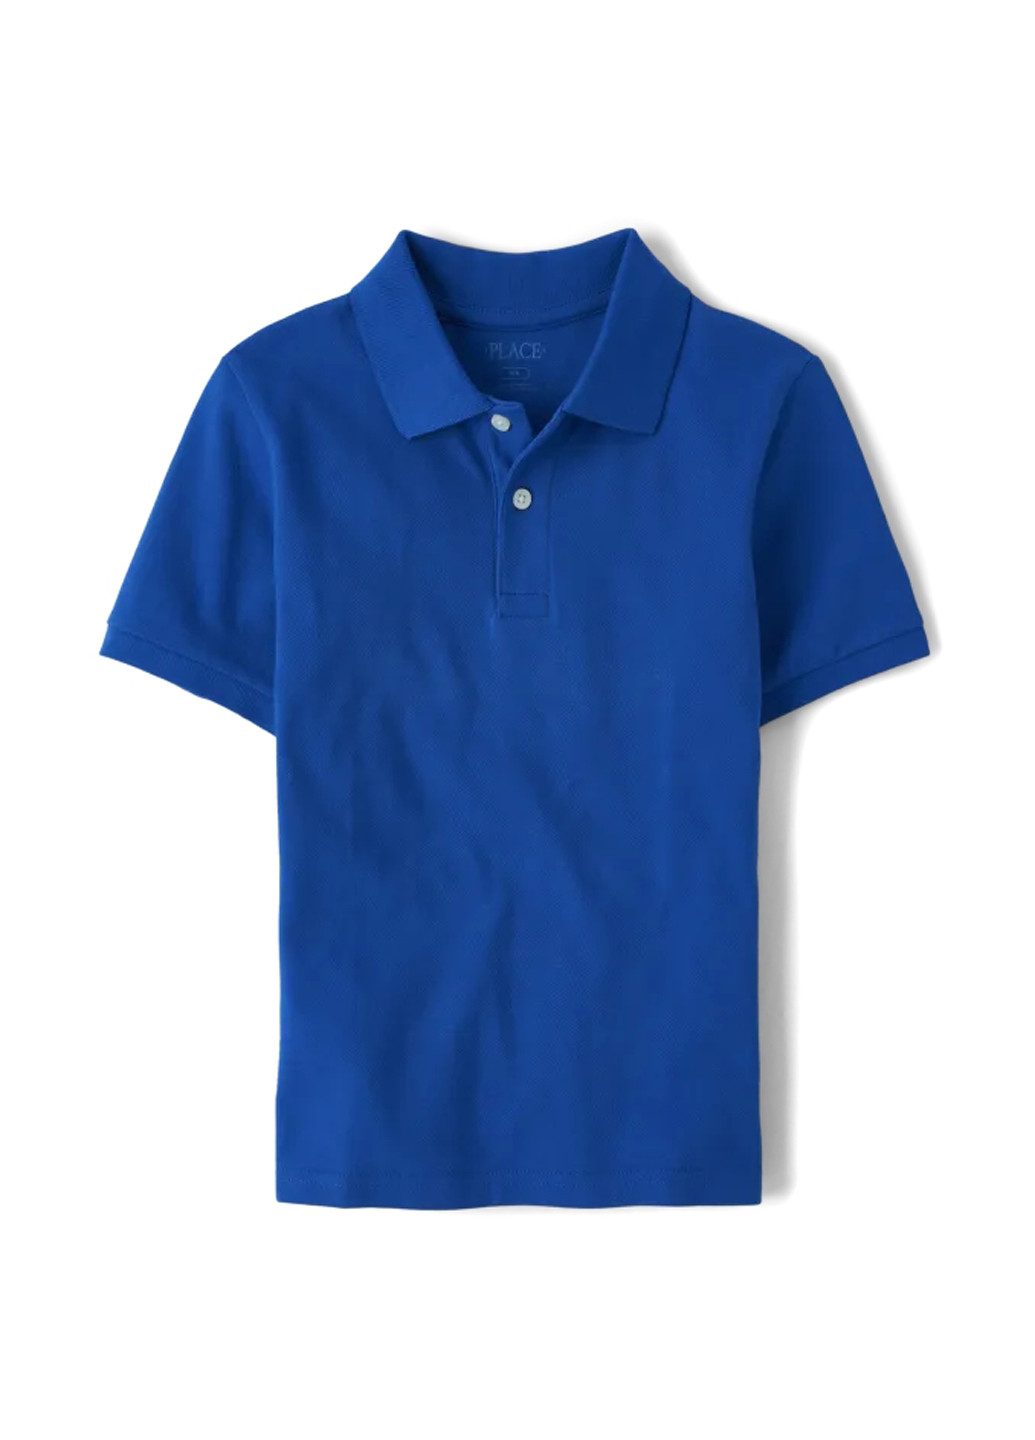 Синяя детская футболка-поло для мальчика The Children's Place однотонная